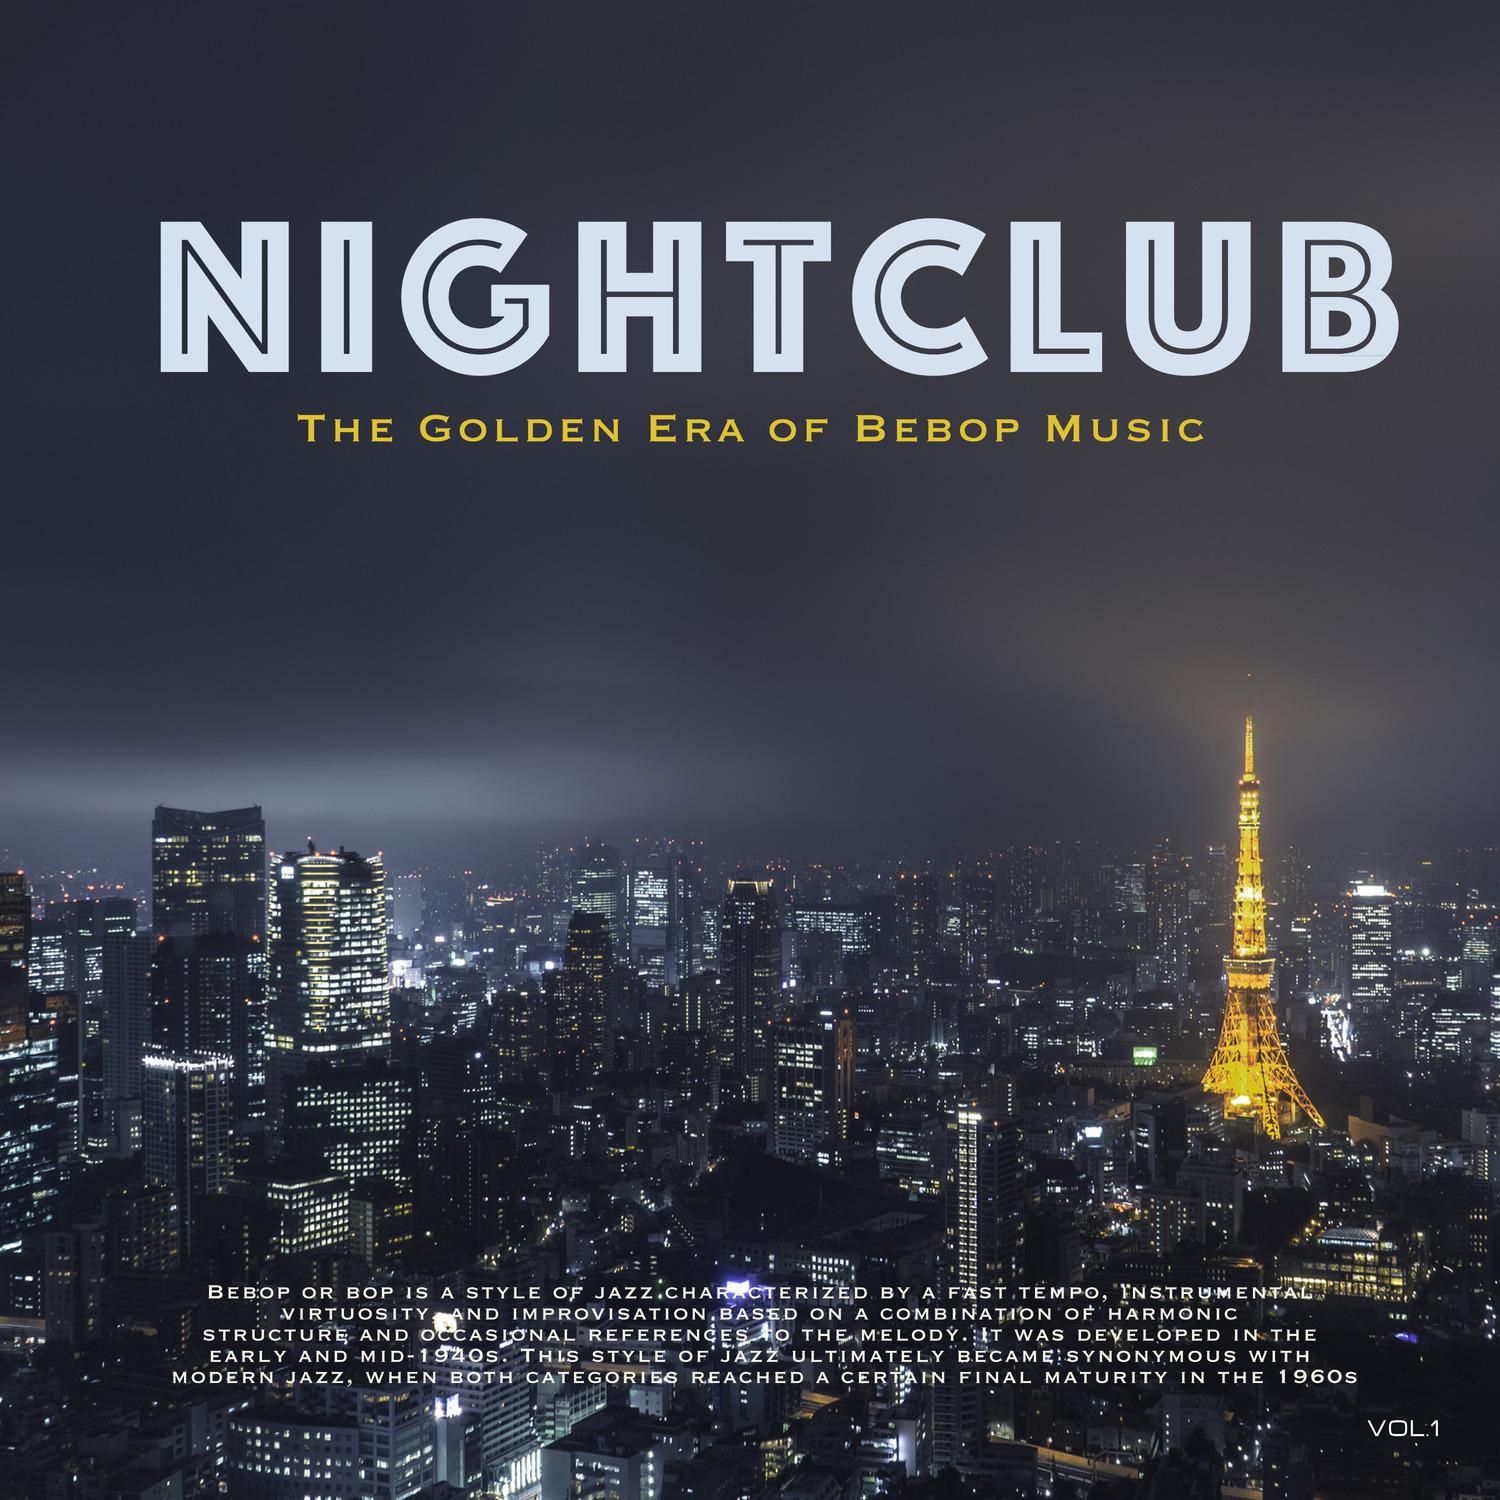 Nightclub, Vol. 1 (The Golden Era of Bebop Music)